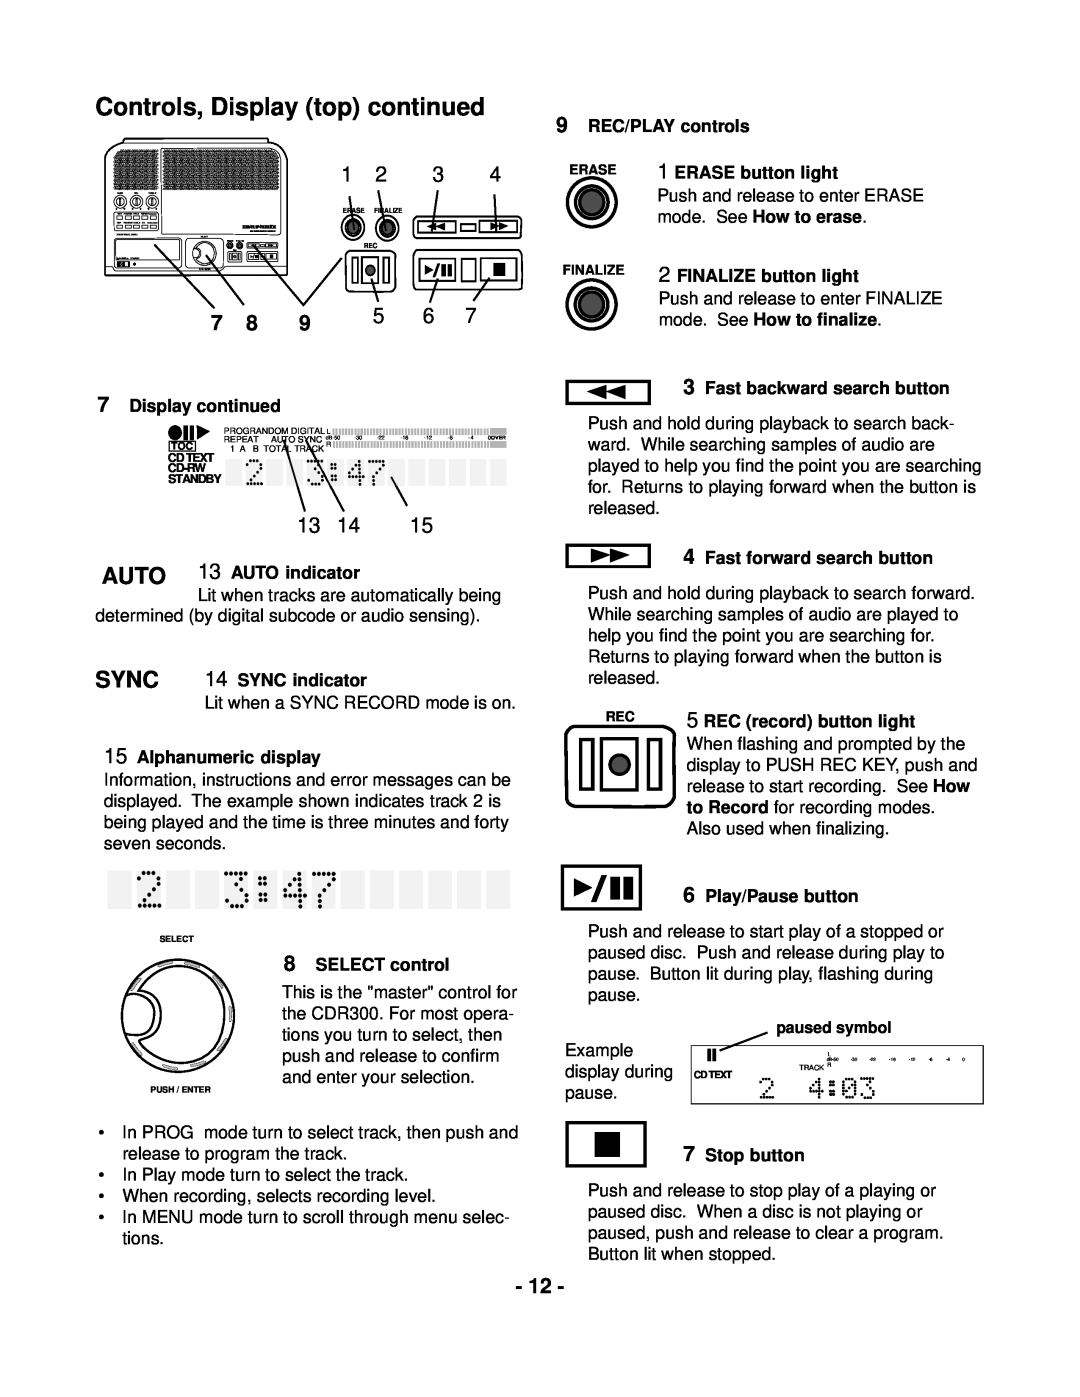 Marantz CDR300 manual Controls, Display top continued, 9REC/PLAY controls 